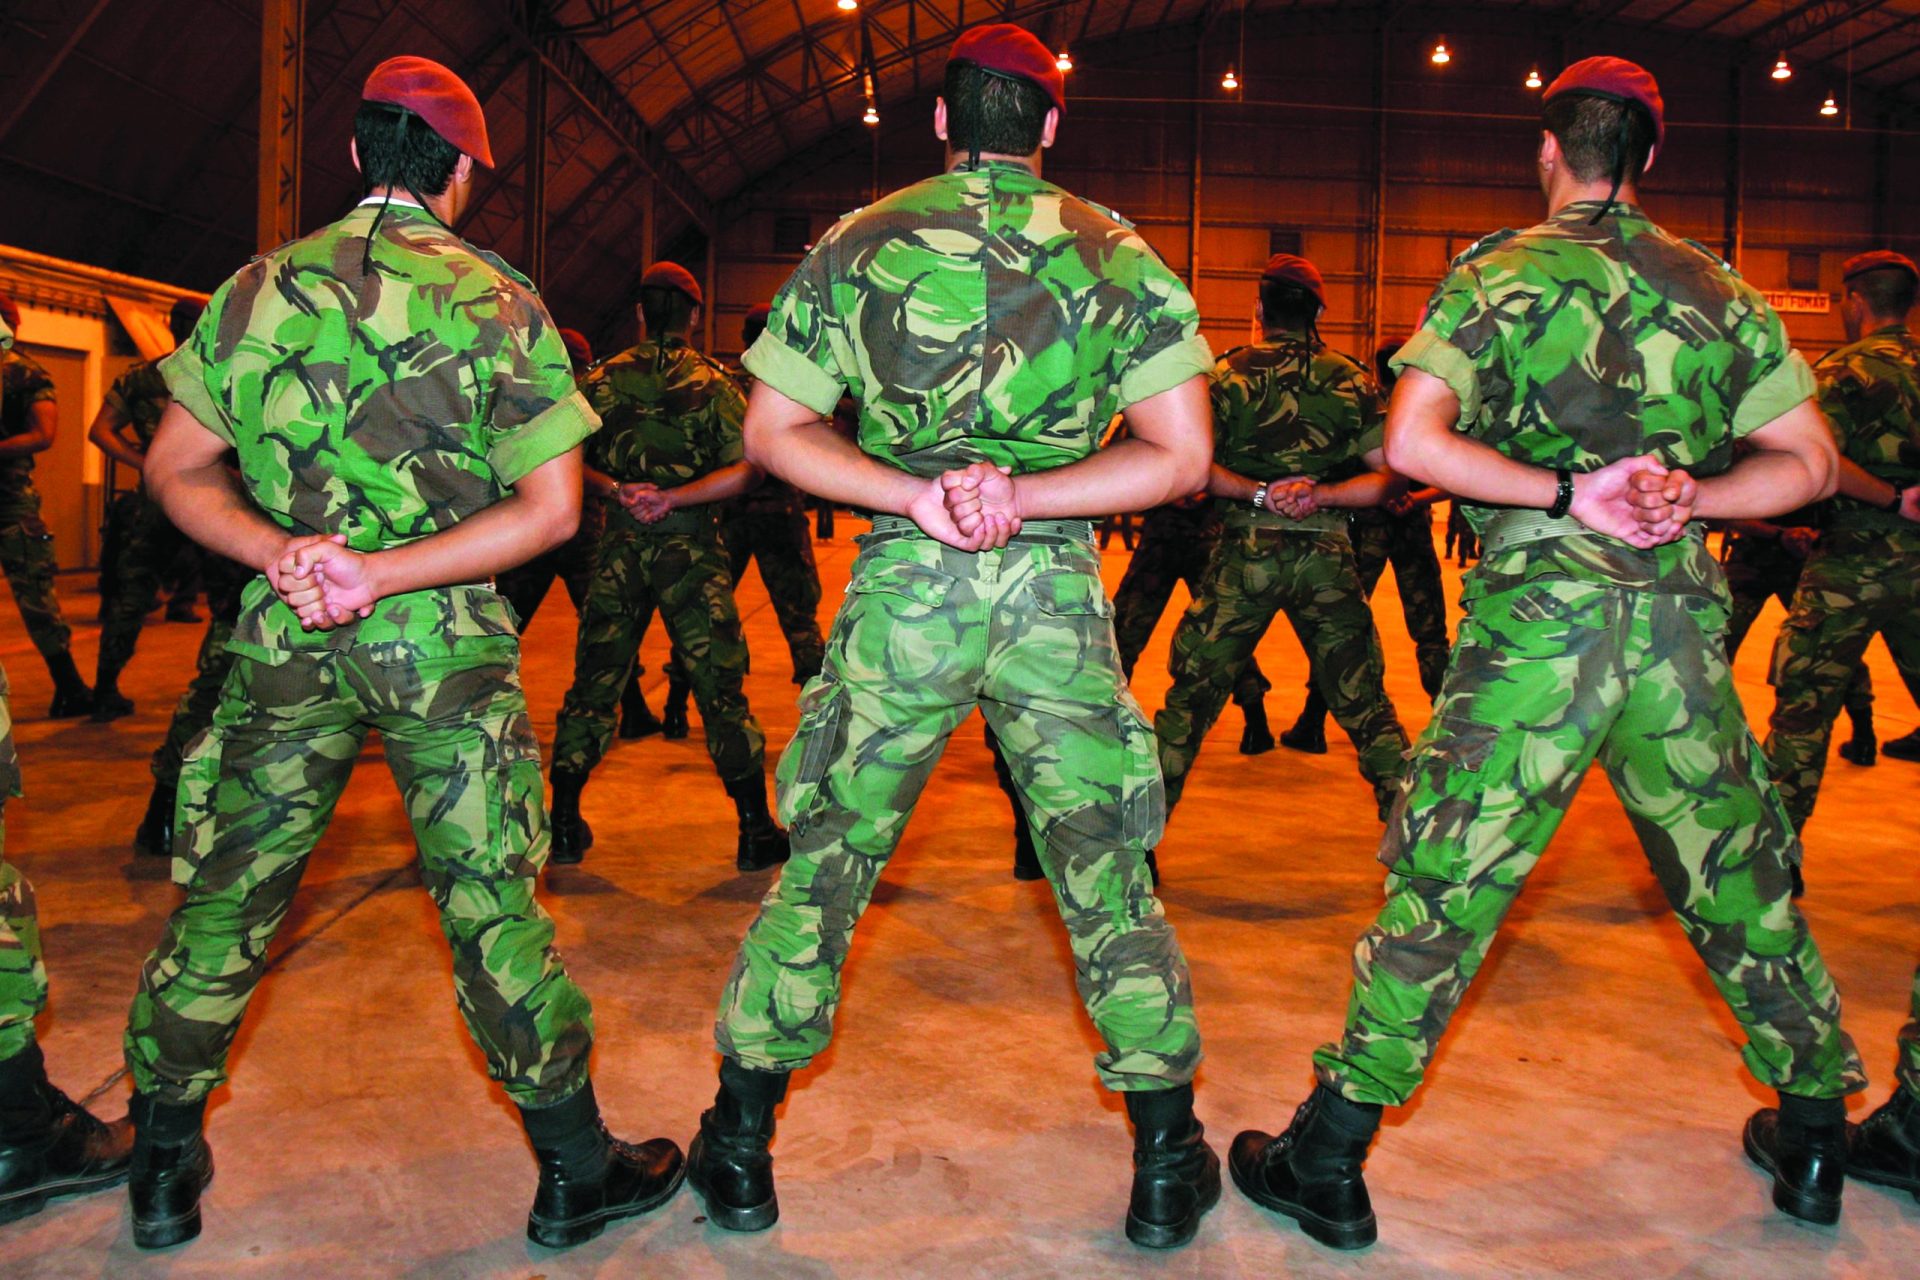 Militares detidos. Associação de Comandos critica Ministério Público